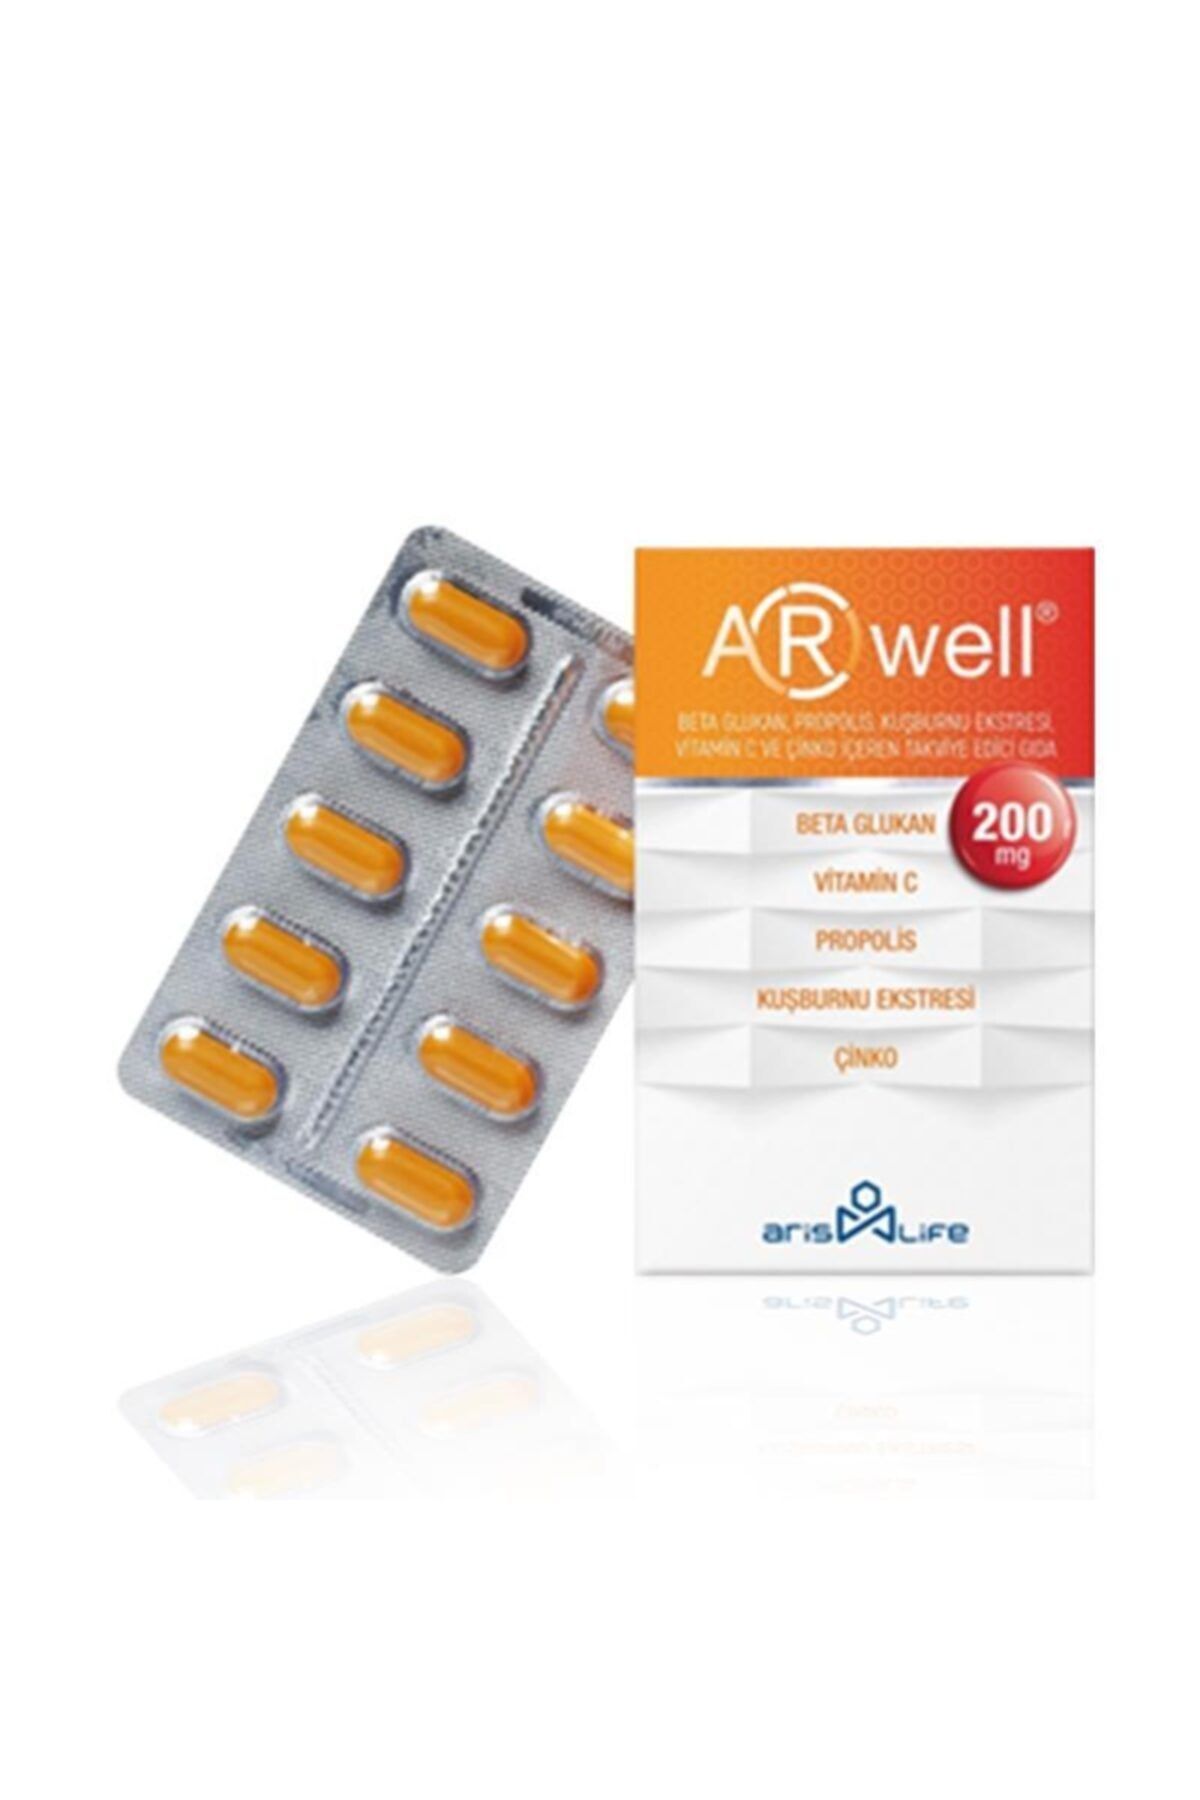 Arwell Beta Glukan - Propolis - Vitamin C - Çinko Içeren Takviye Edici Gıda 200 Mg